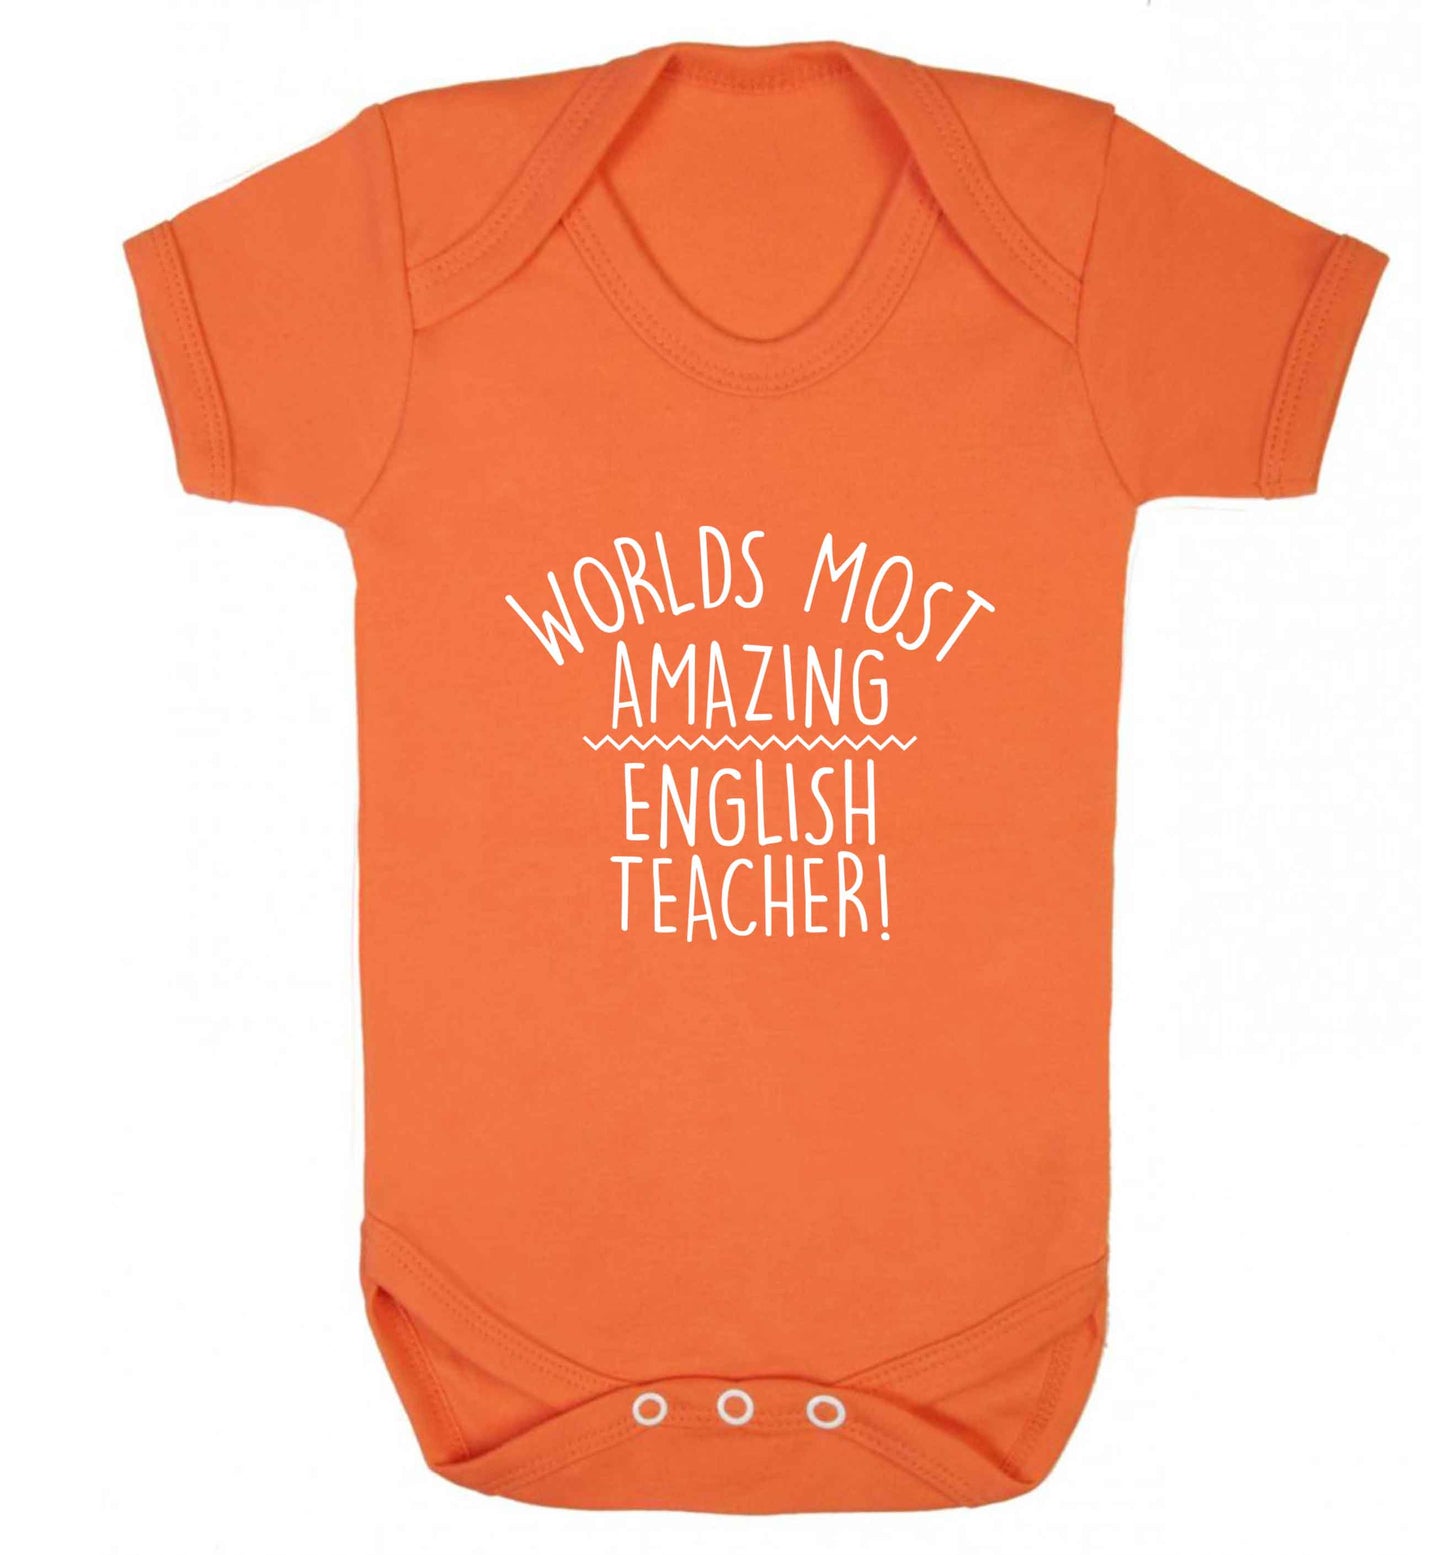 Worlds most amazing English teacher baby vest orange 18-24 months